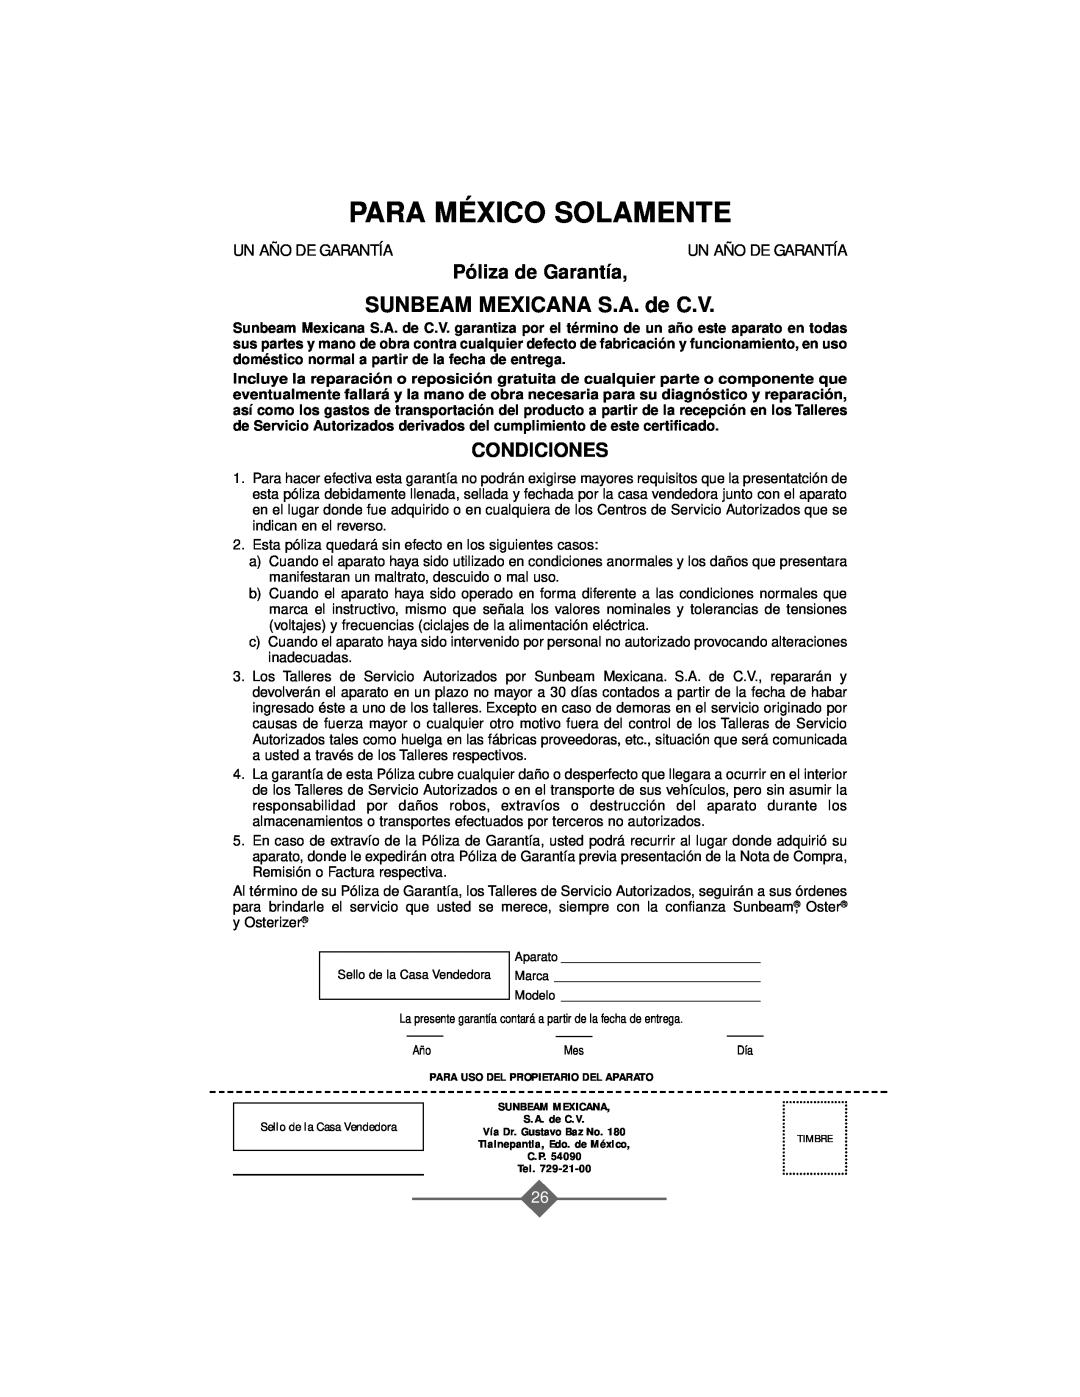 Sunbeam 2368, 2388, 2386, 2367, 2369 Para México Solamente, SUNBEAM MEXICANA S.A. de C.V, Póliza de Garantía, Condiciones 